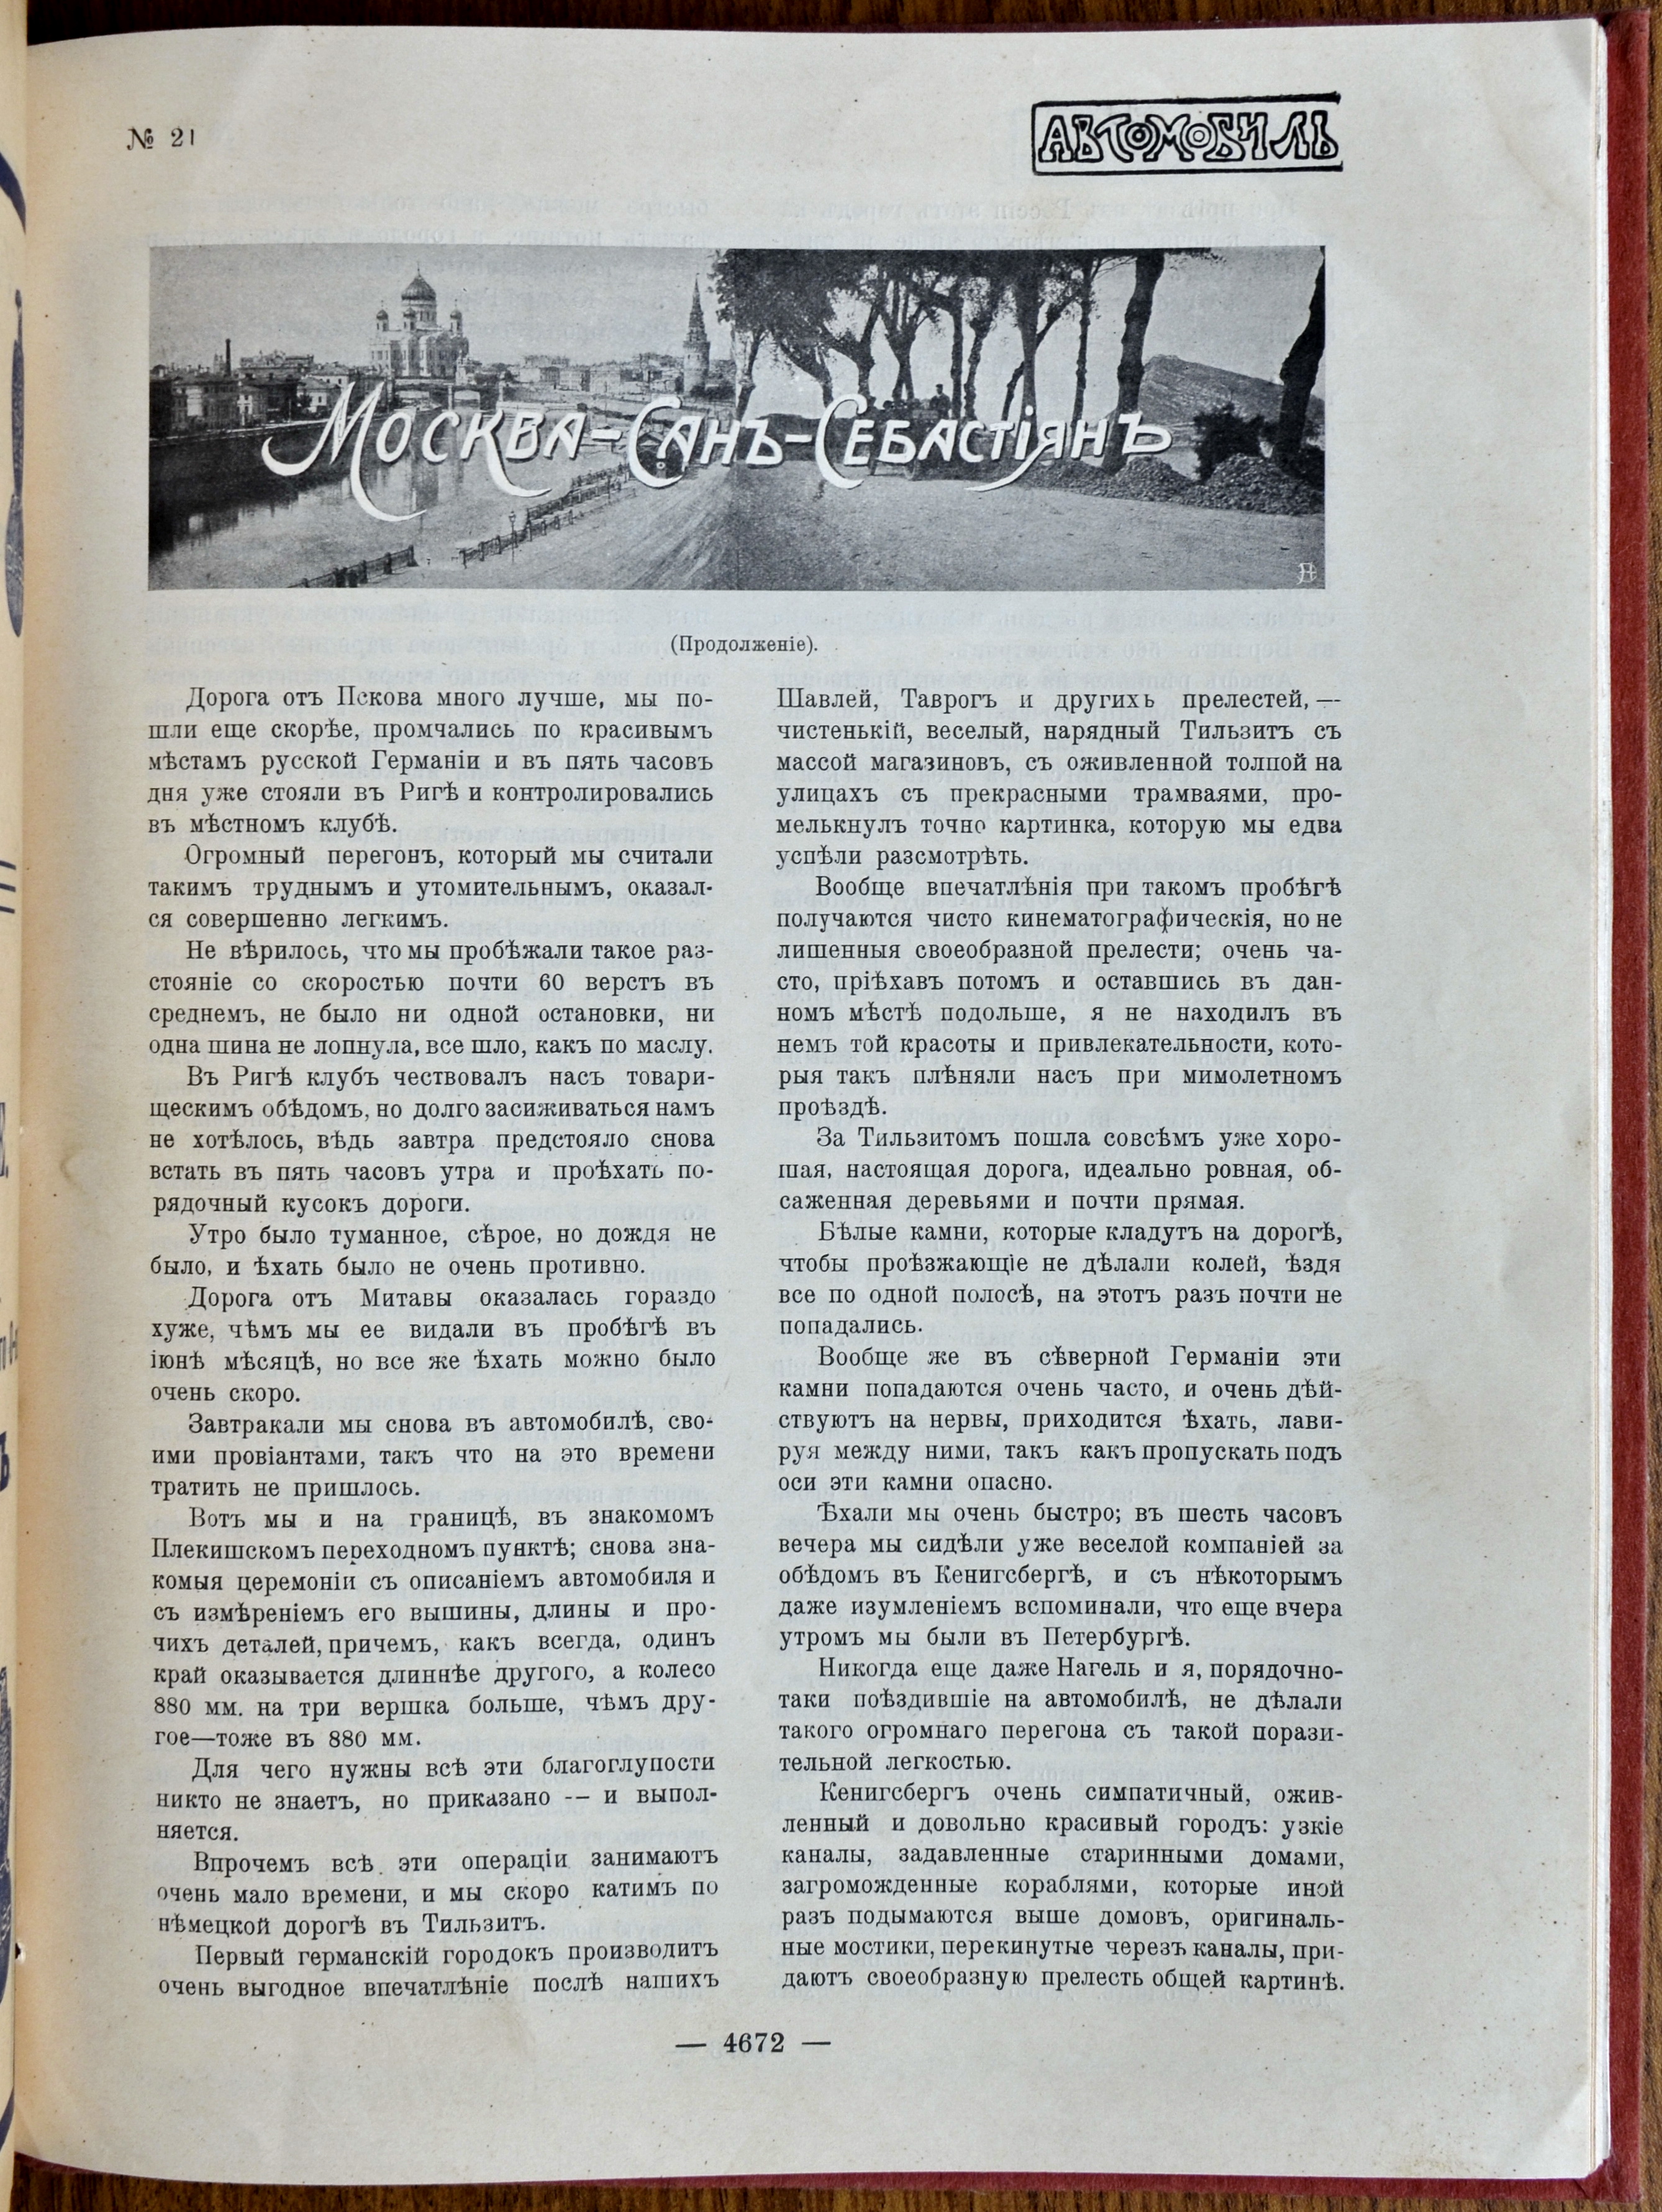 страницы журнала "Автомобиль" с рассказом о поездке Андрея Нагеля в Европу.